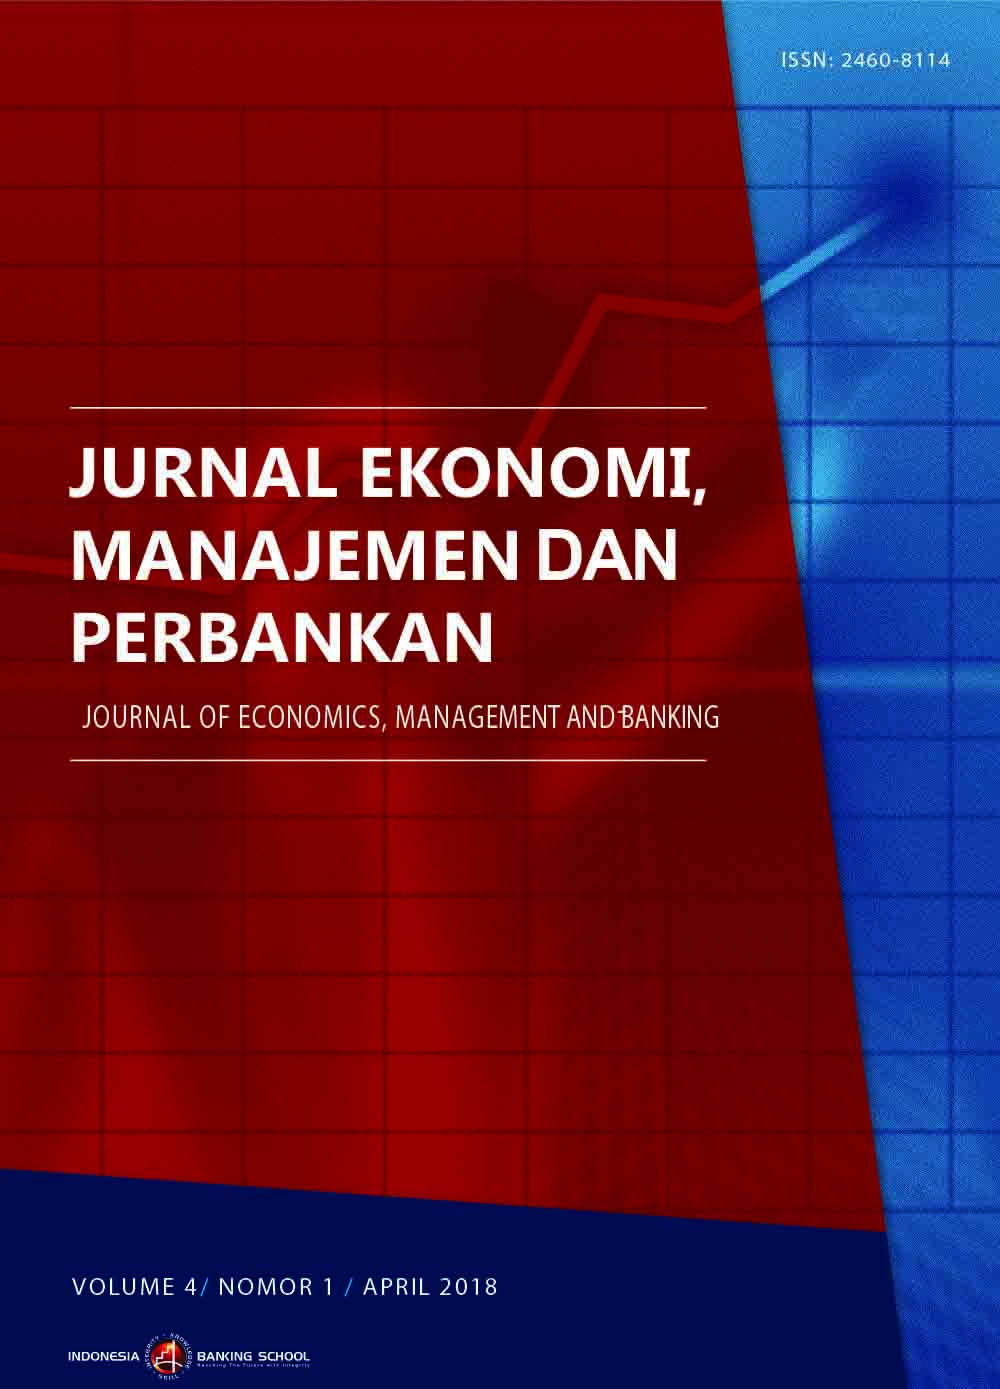 					View Vol. 4 No. 1 (2018): Jurnal Ekonomi, Manajemen dan Perbankan (Journal of Economics, Management, and Banking), Volume 4 No. 1, April 2018
				